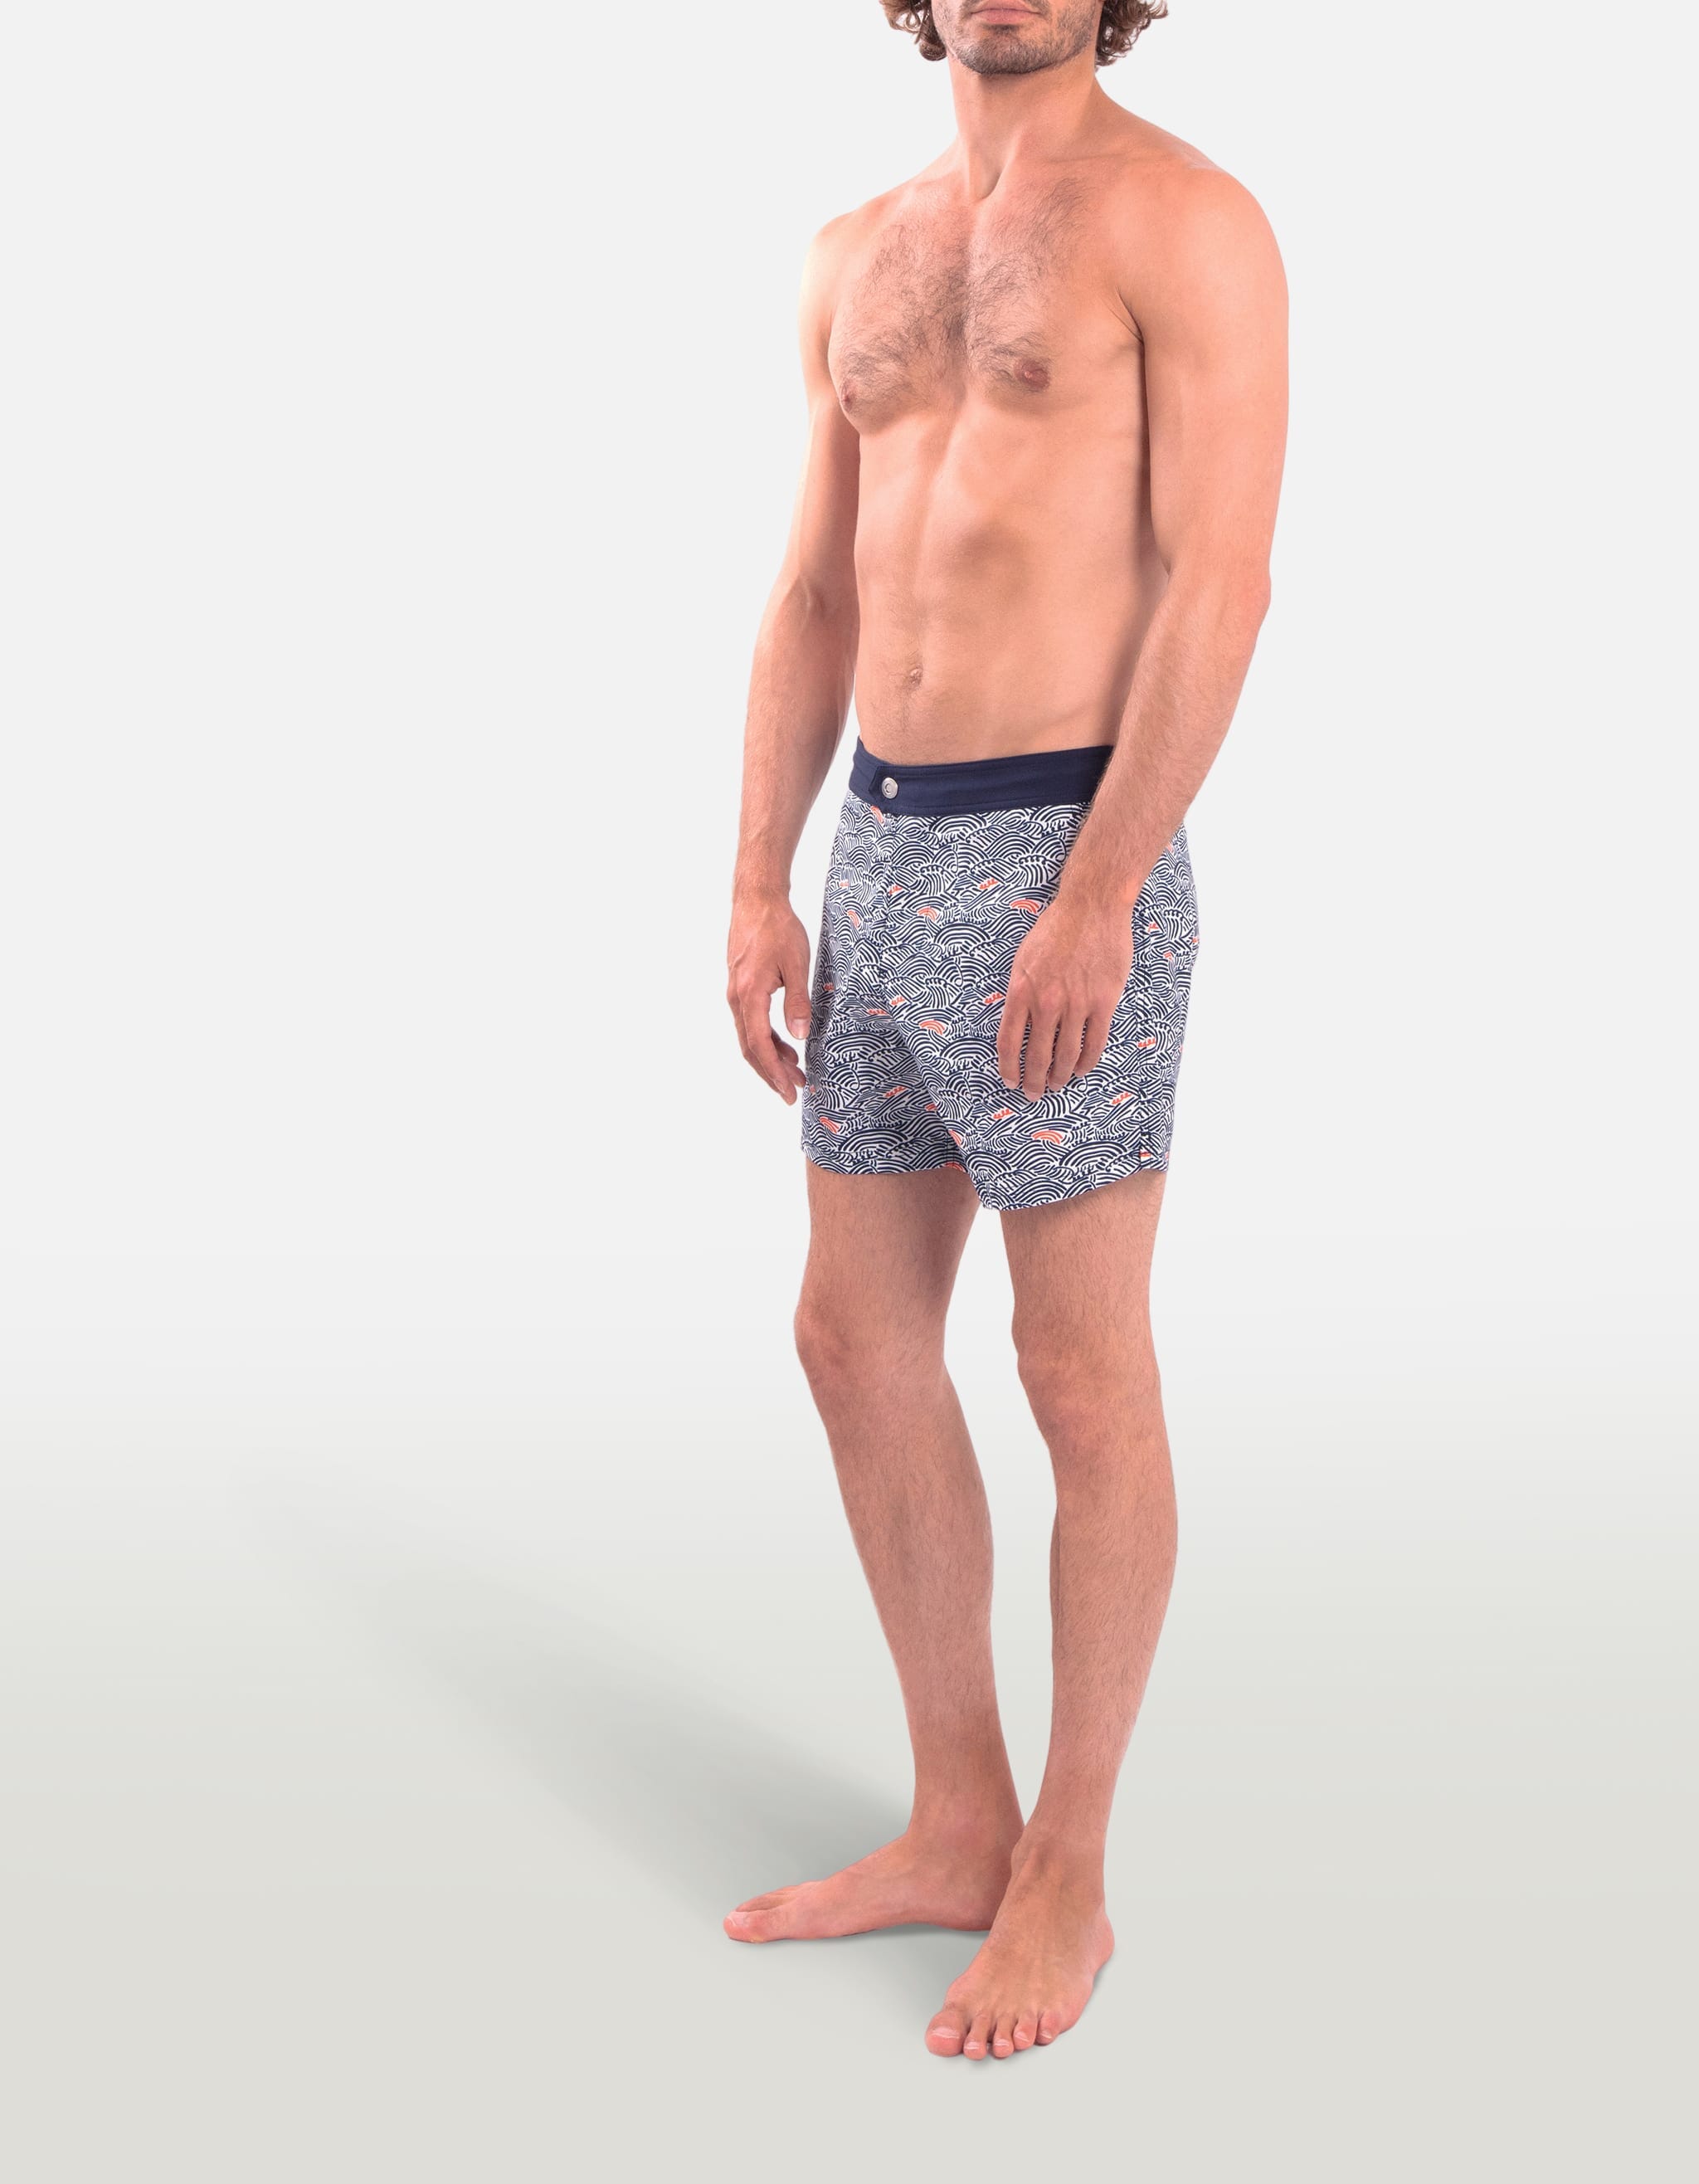 Ben - P23. Blue Nami Swim Shorts - Ben MACKEENE 